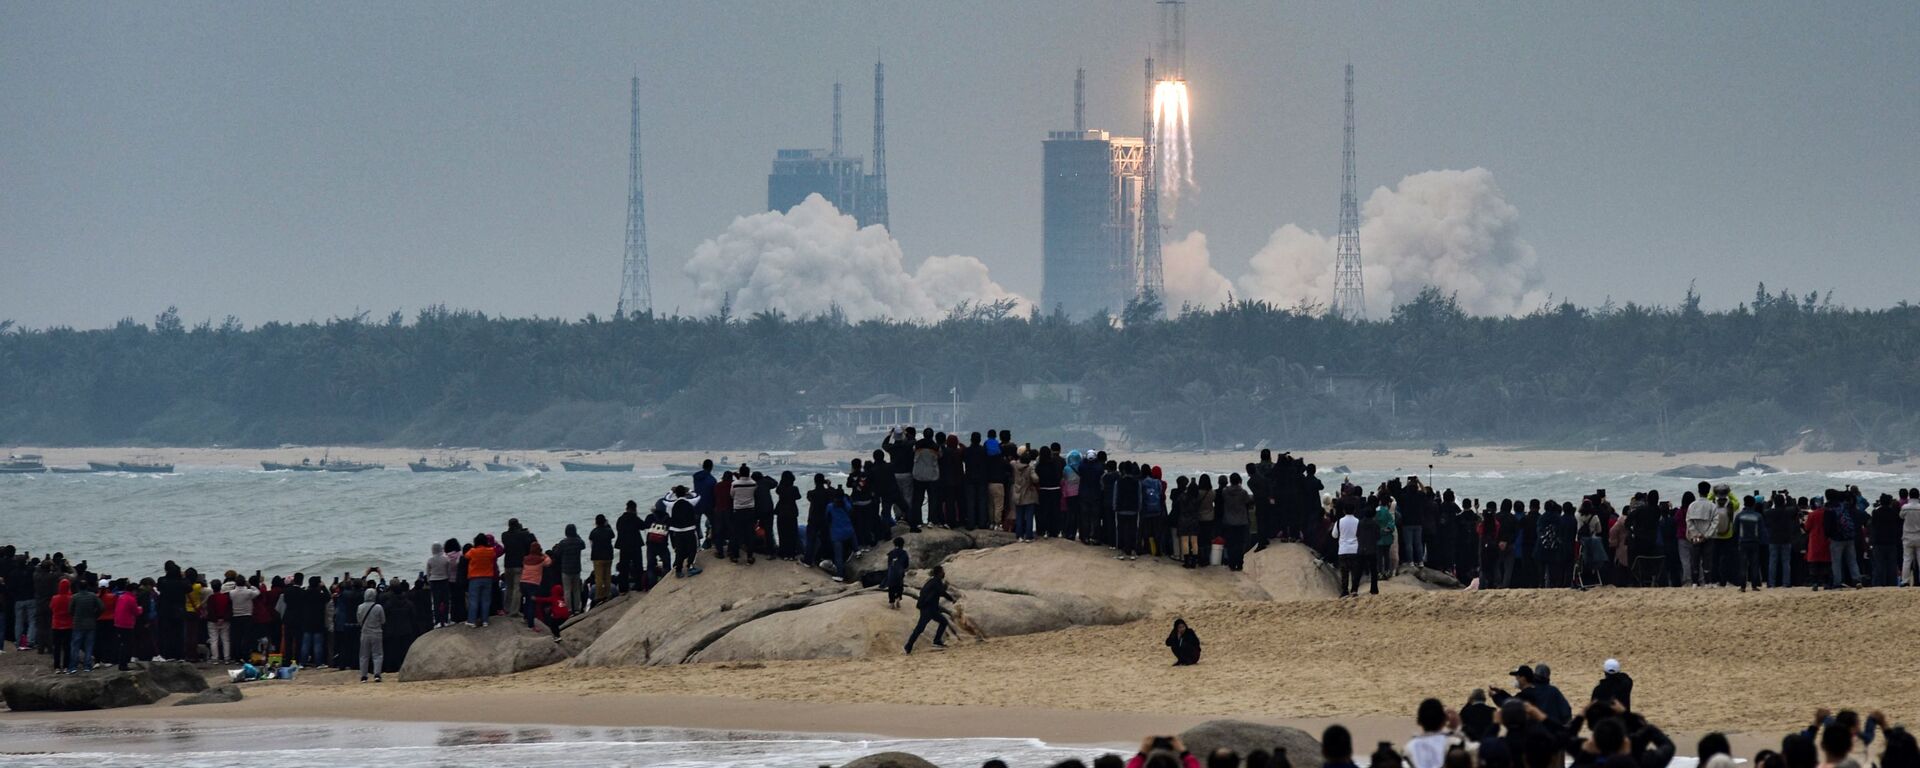 يشاهد الناس صاروخ لونع مارتش، وهو أحدث أسطول لمركبات الإطلاق الصينية لونع مارتش-8، وهو ينطلق من مركز وينشانغ للإطلاق الفضائي في مقاطعة هاينان جنوب الصين في 22 ديسمبر 2020. - سبوتنيك عربي, 1920, 14.04.2023